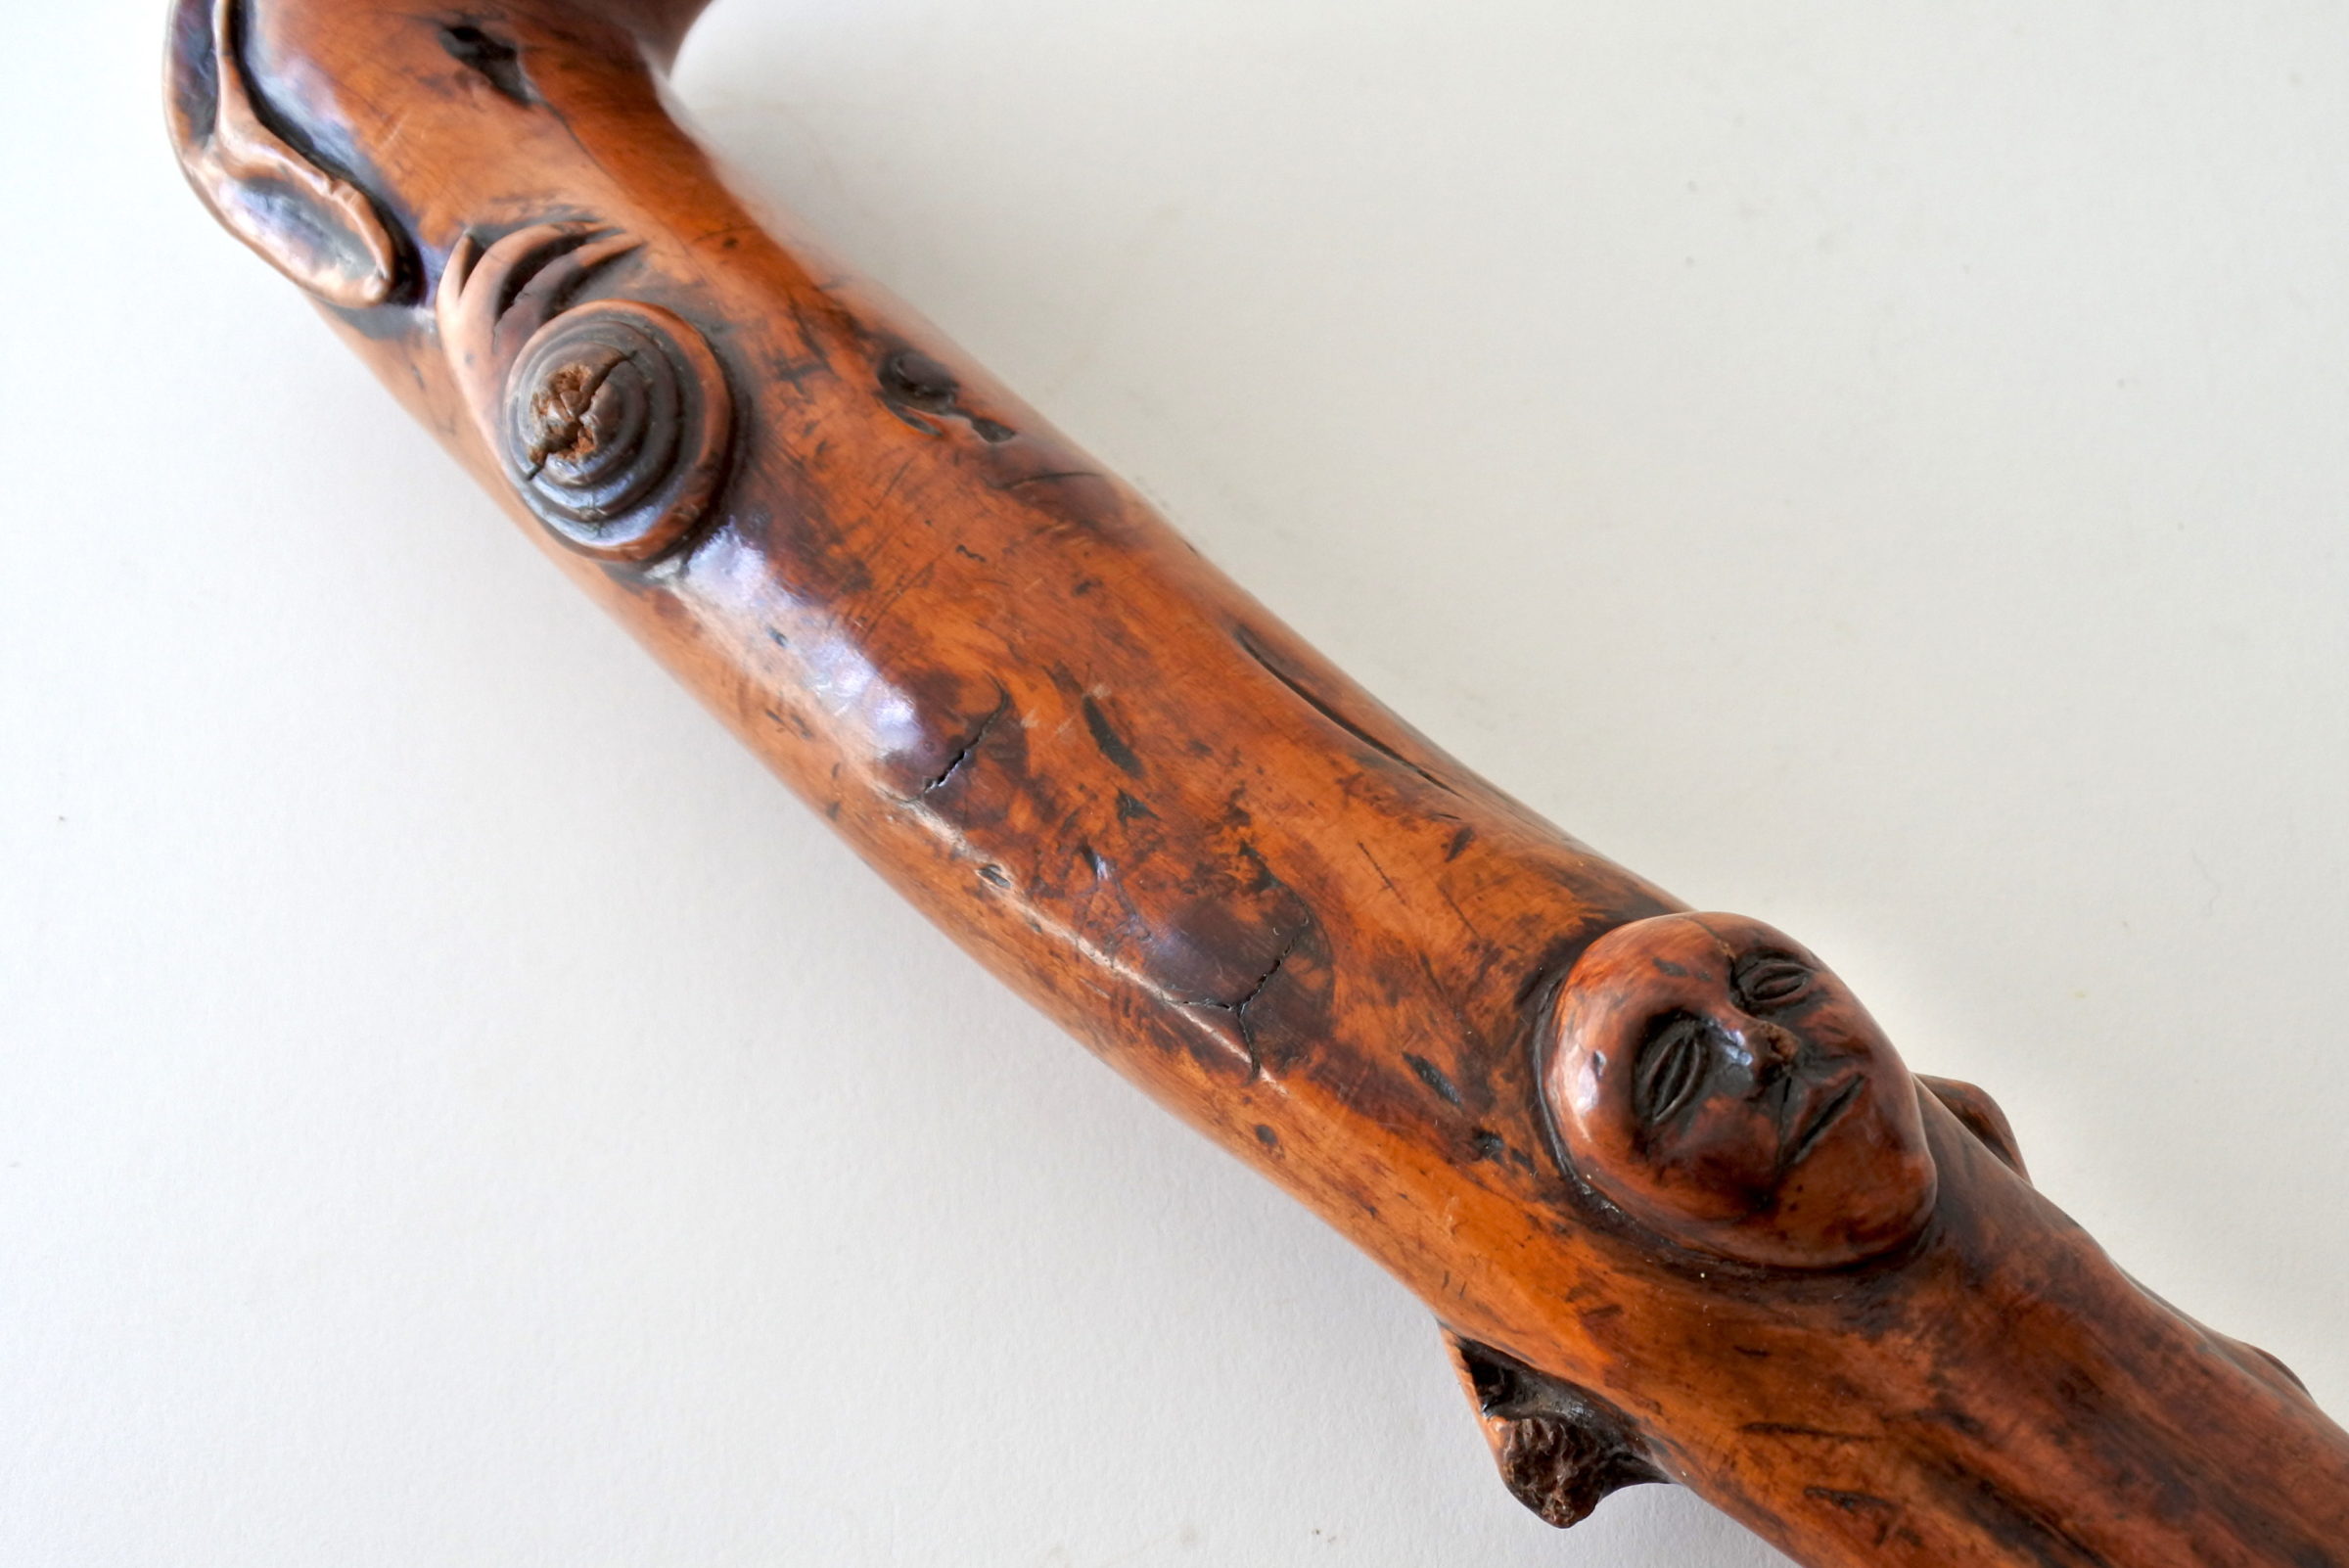 Bastone monossilo in legno scolpito con impugnatura a forma di testa di cane - 6